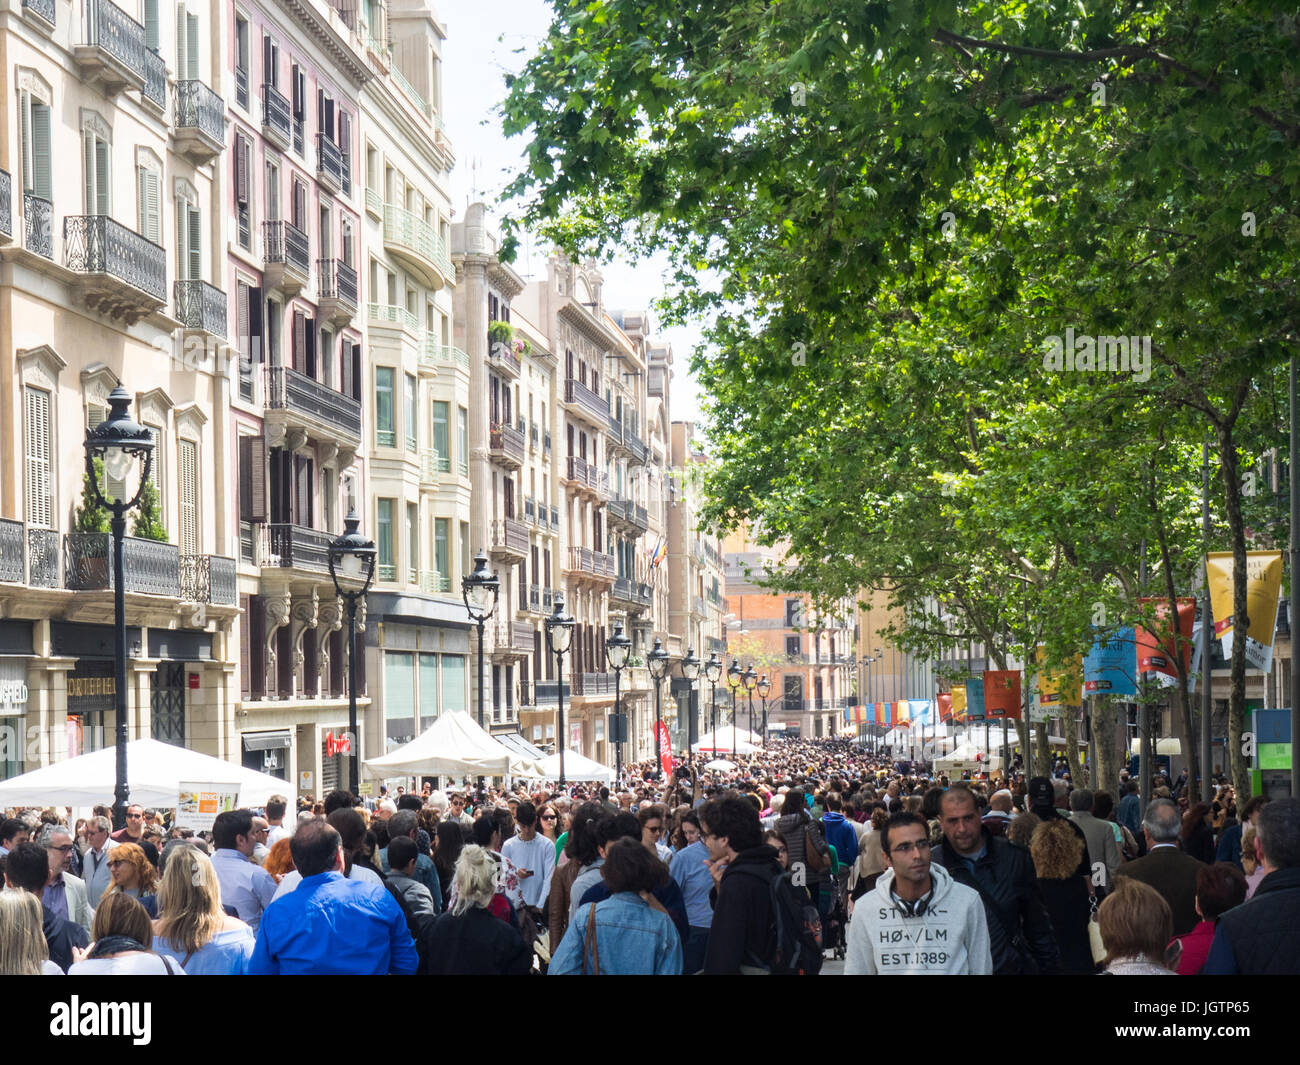 Crowds op people walking along Avinguda del Portal de l'Àngel on Sat Jordi Day, Barcelona, Spain. Stock Photo